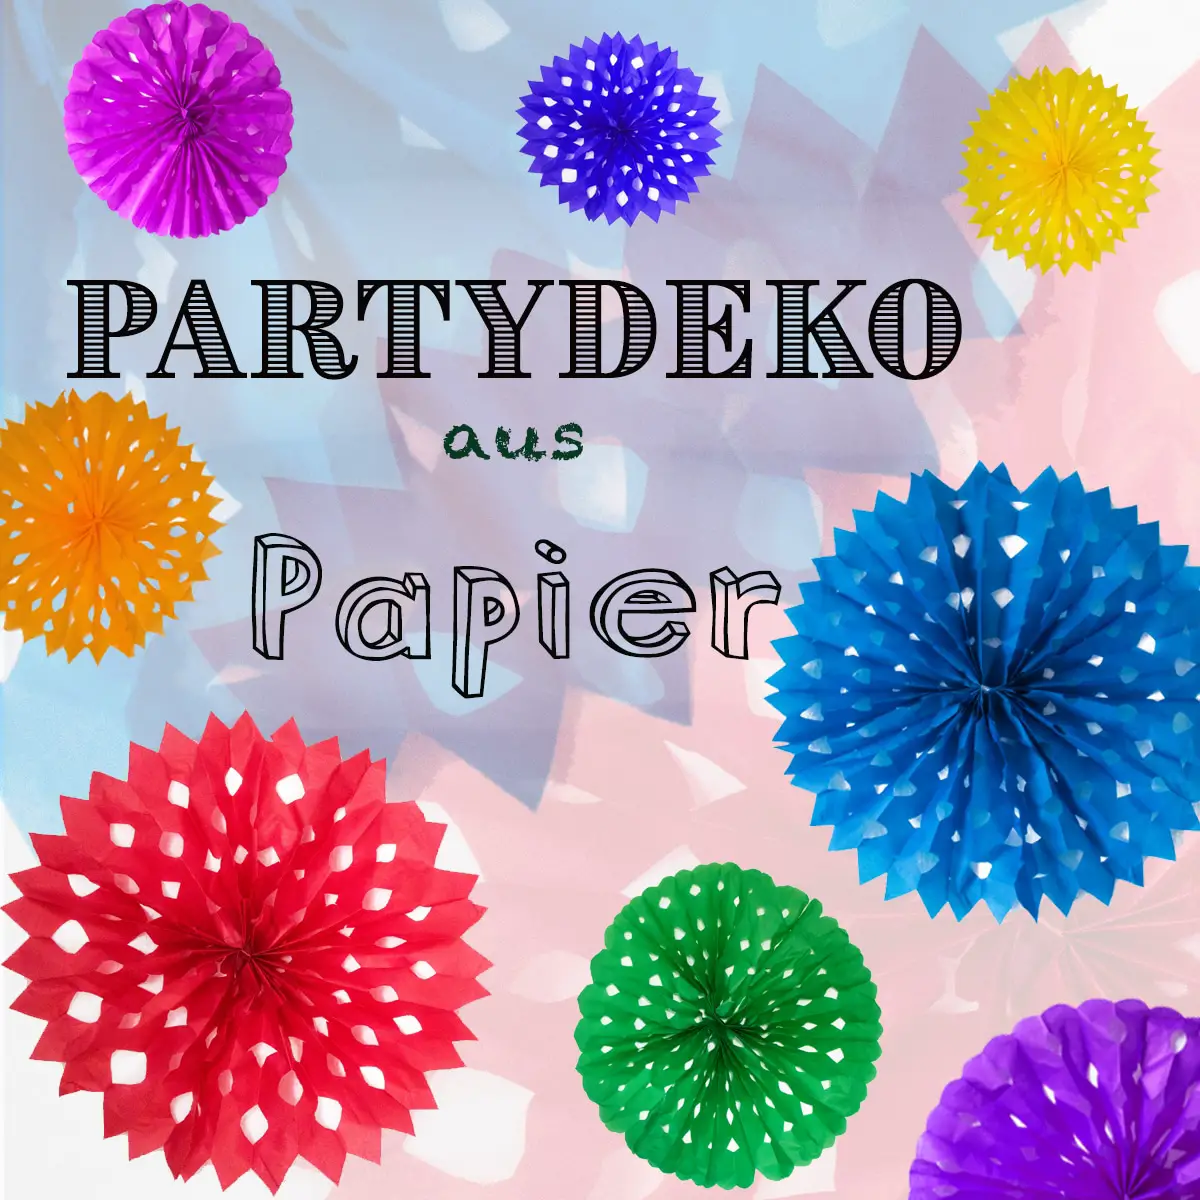 Partydekoration DIY - Papierblumen selber machen